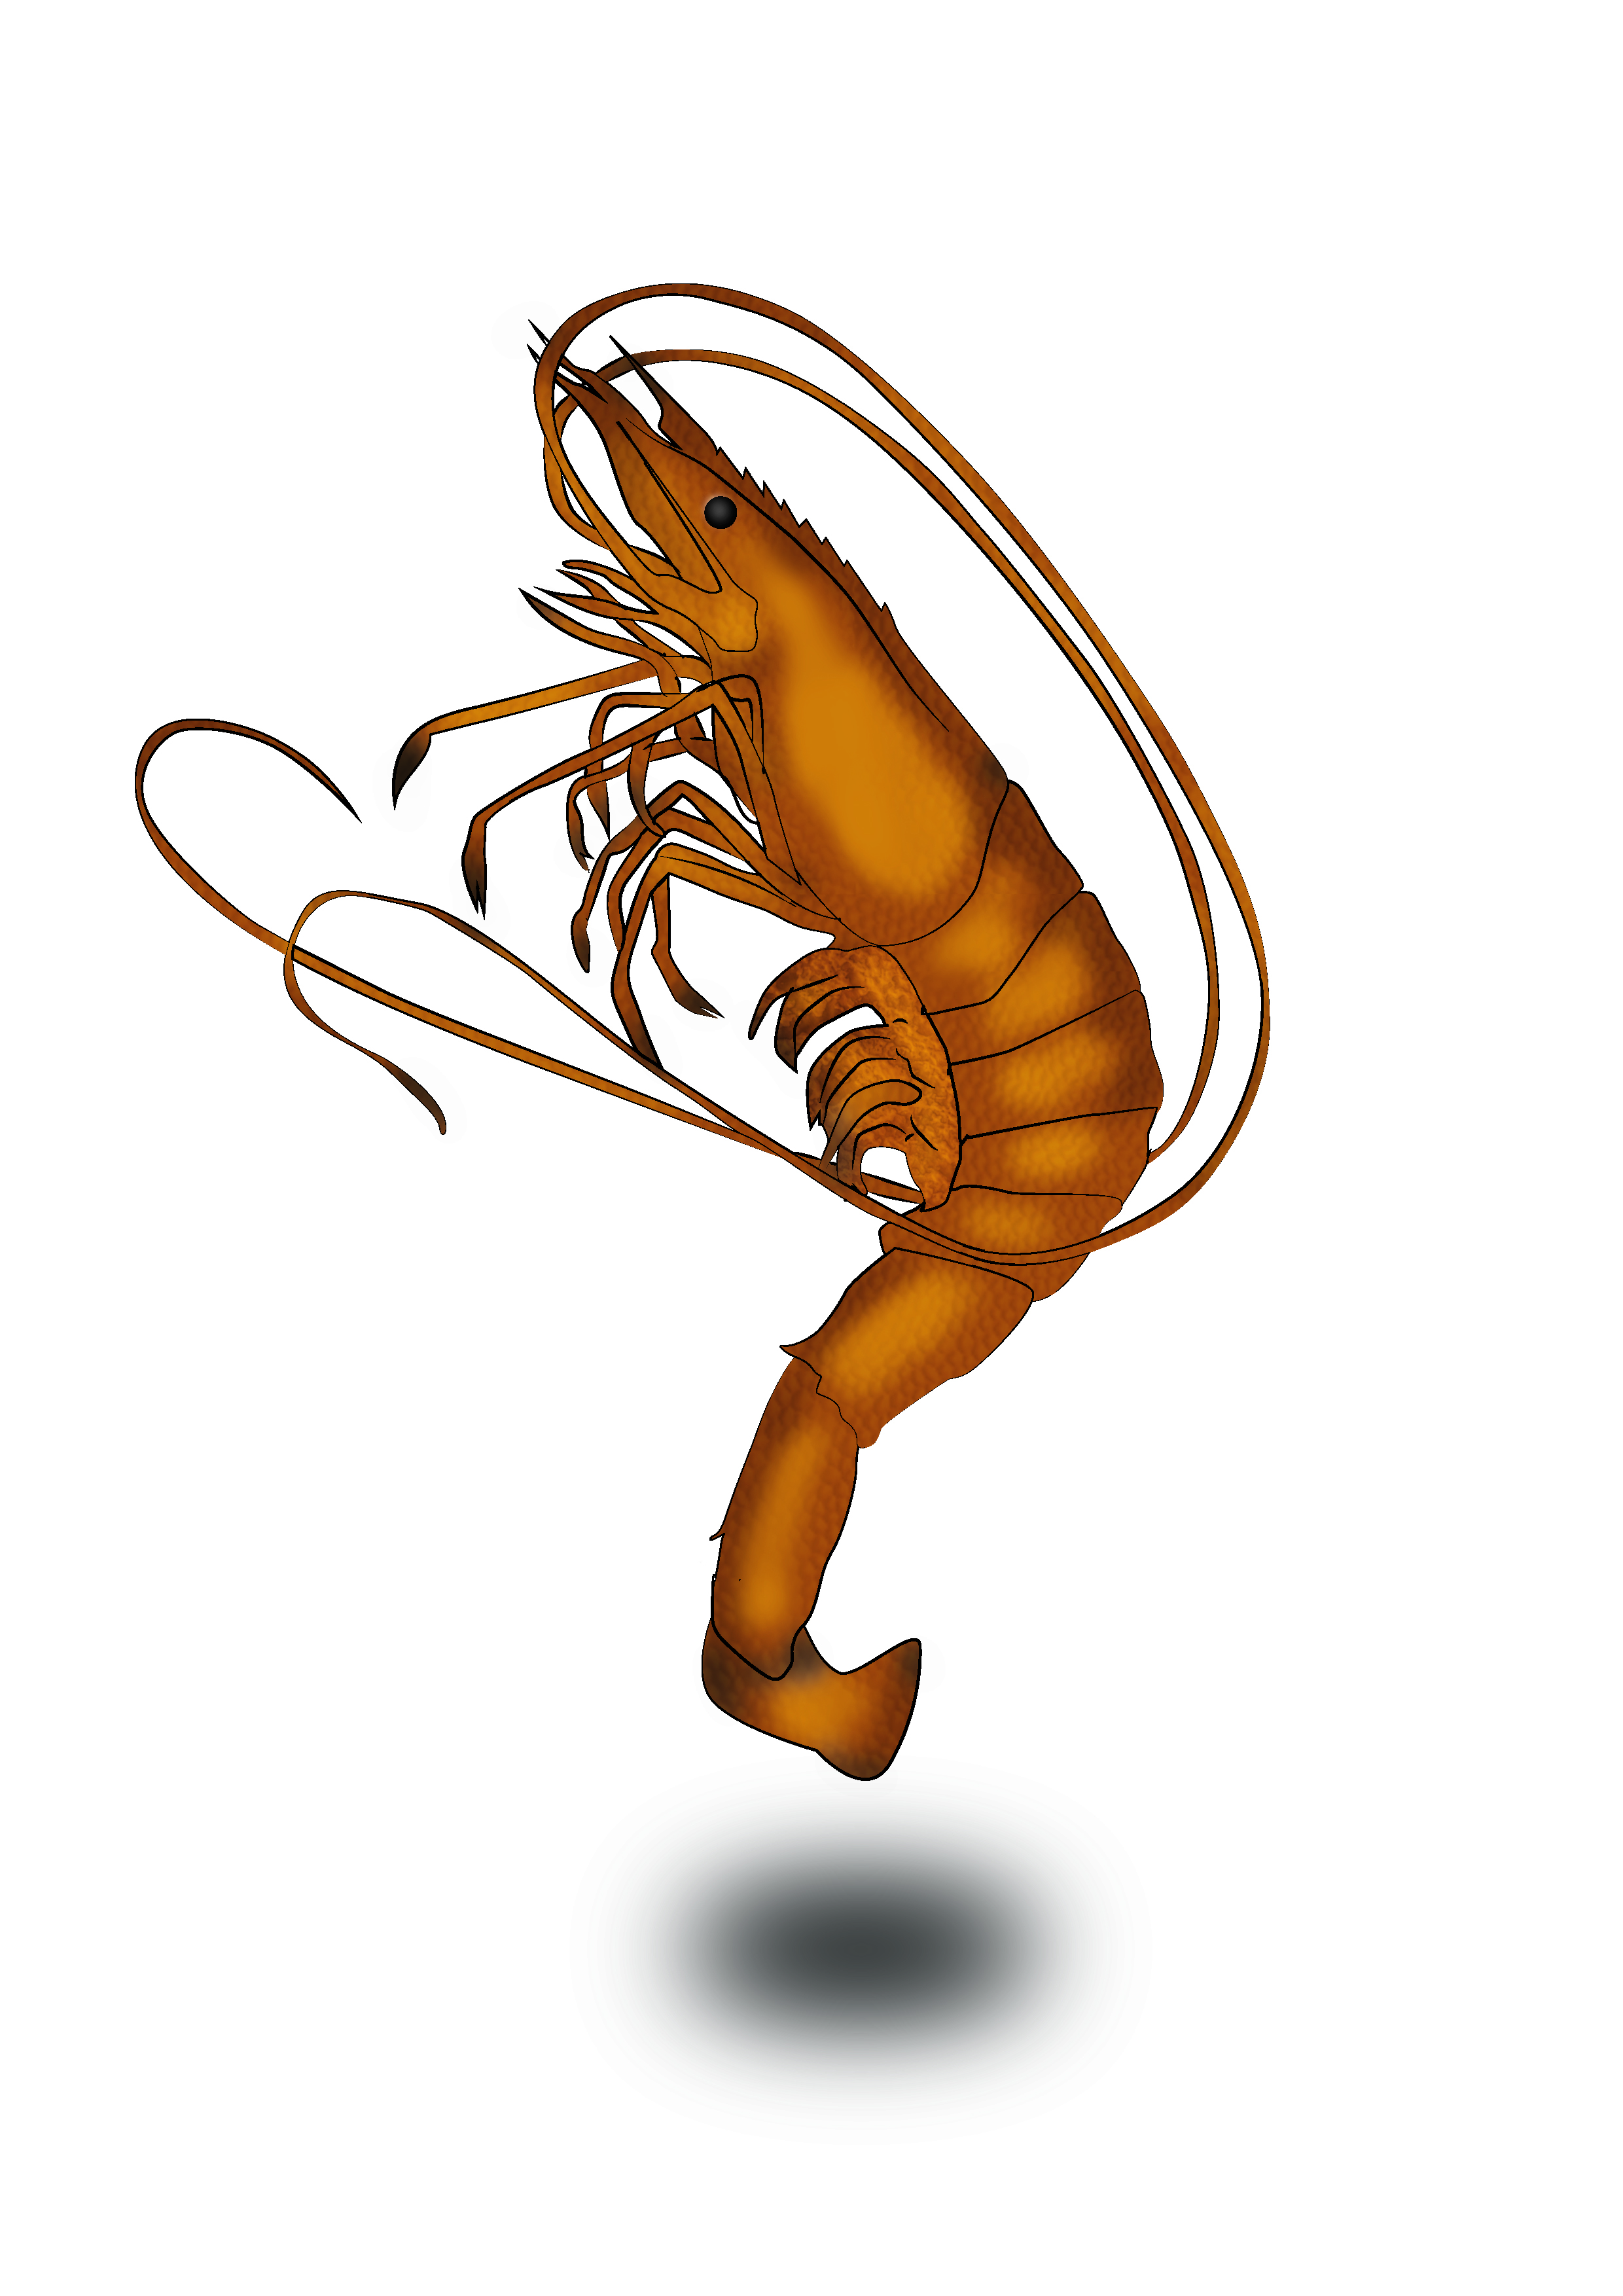 Shrimp biology illustration 1